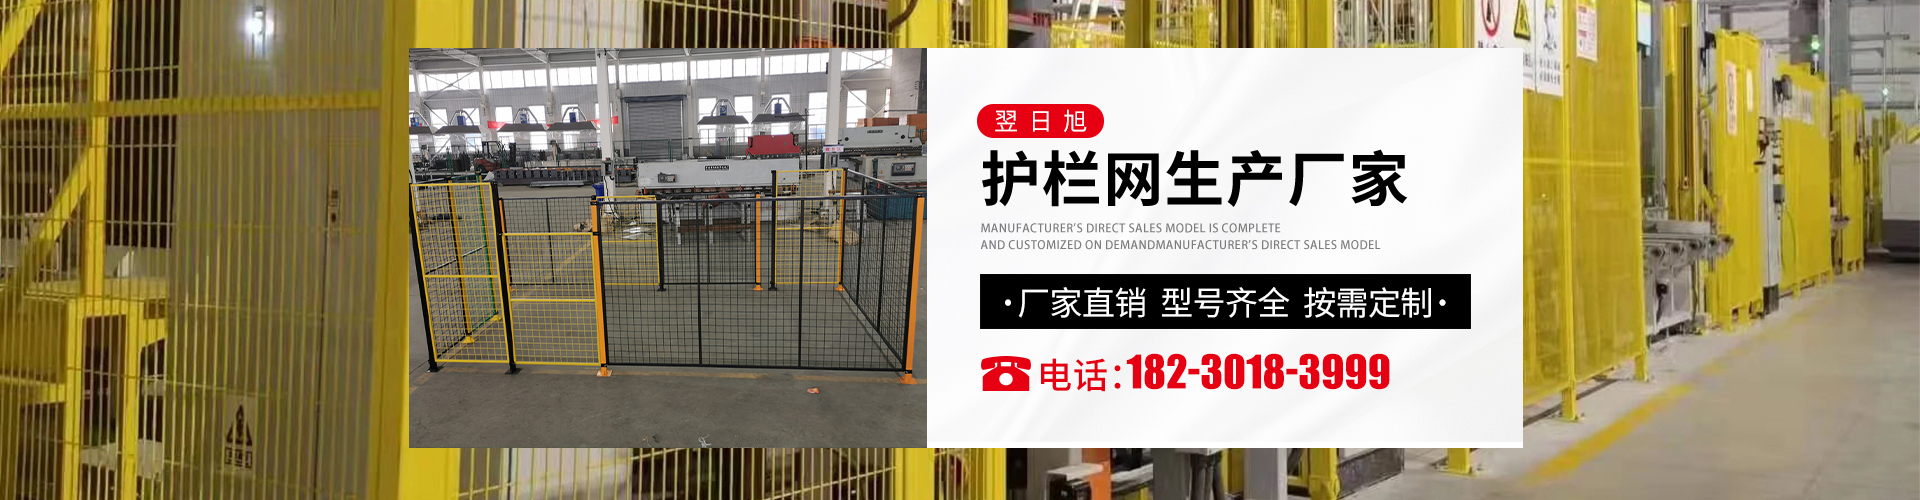 护栏网生产厂家，可定制尺寸，联系电话：18230183999